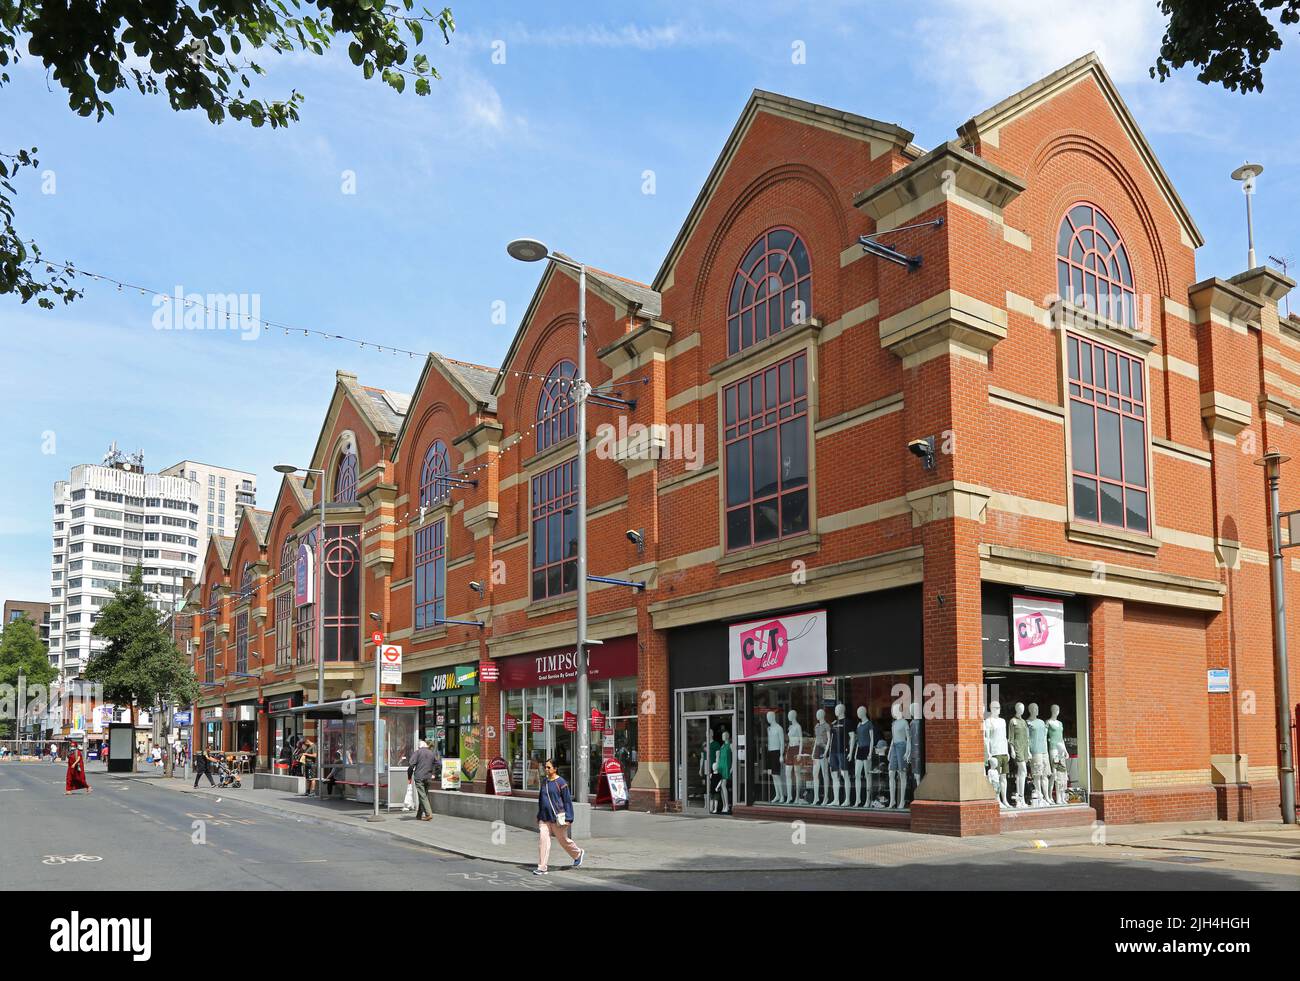 Barking Town Centre, London, Großbritannien. Ripple Road, zeigt das Einkaufszentrum Vicarage Field (rechts). Belebte High Street-Umgebung. Sommertag. Stockfoto